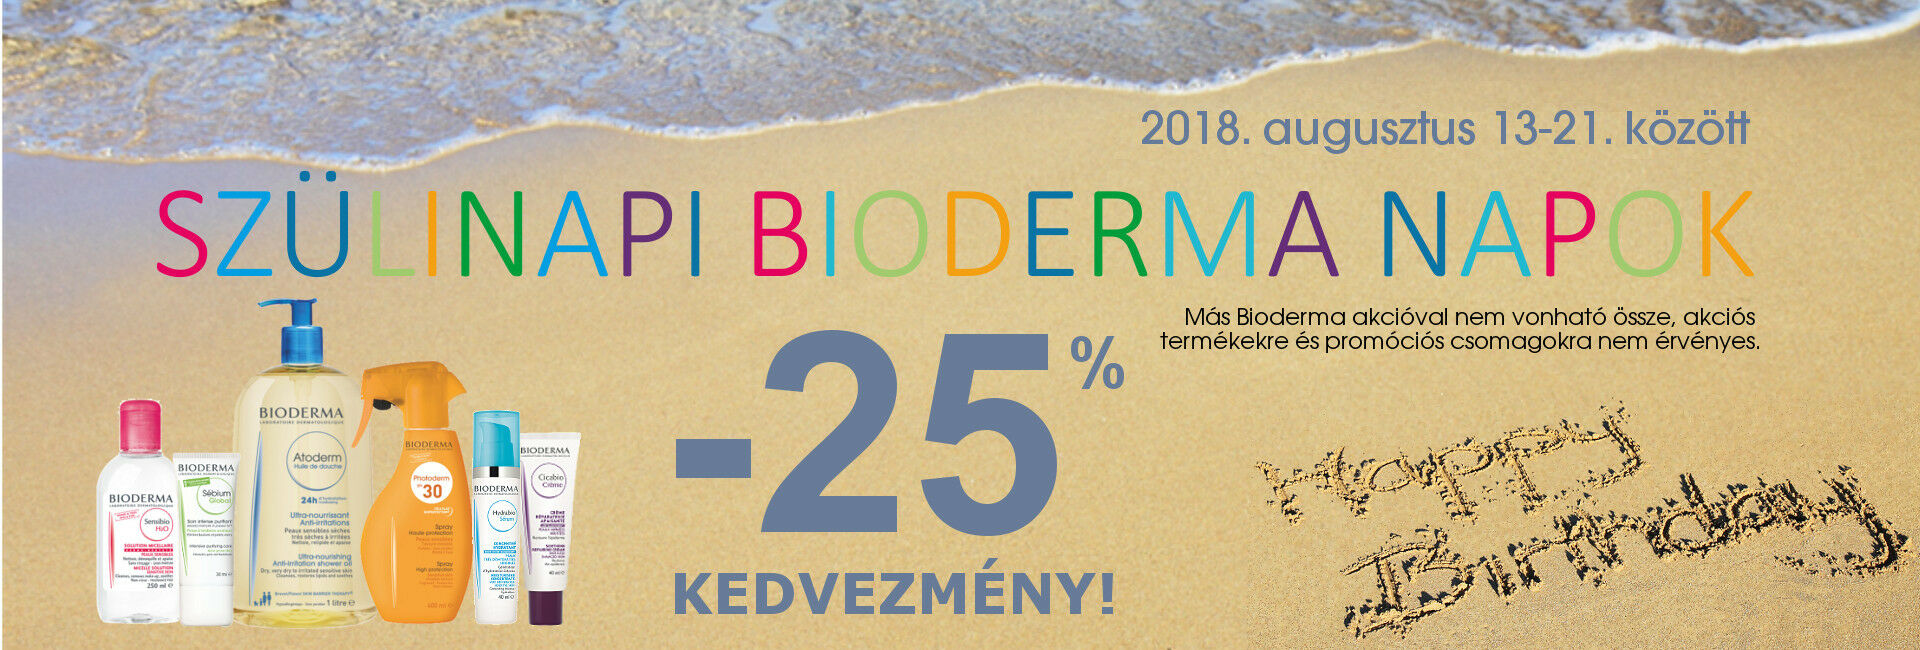 SZületésnapi Bioderma Napok: 2018. augusztus 13-21. között minden Bioderma termékre 25-50% kedvezményt adunk!